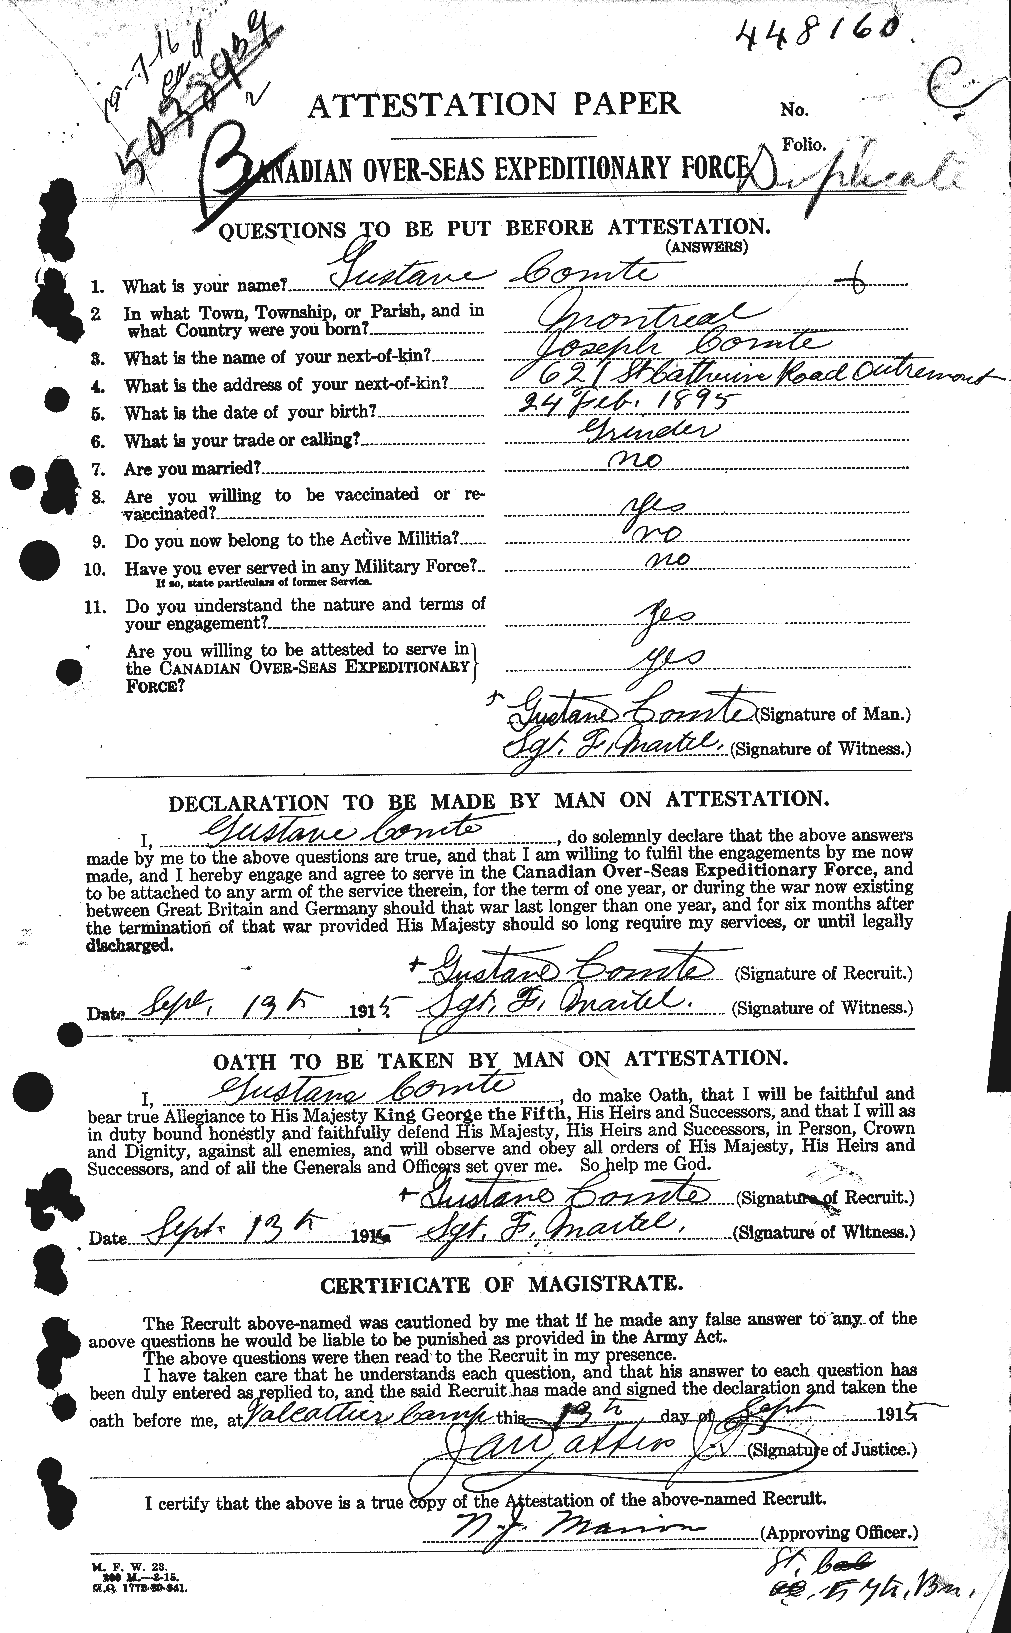 Dossiers du Personnel de la Première Guerre mondiale - CEC 068172a